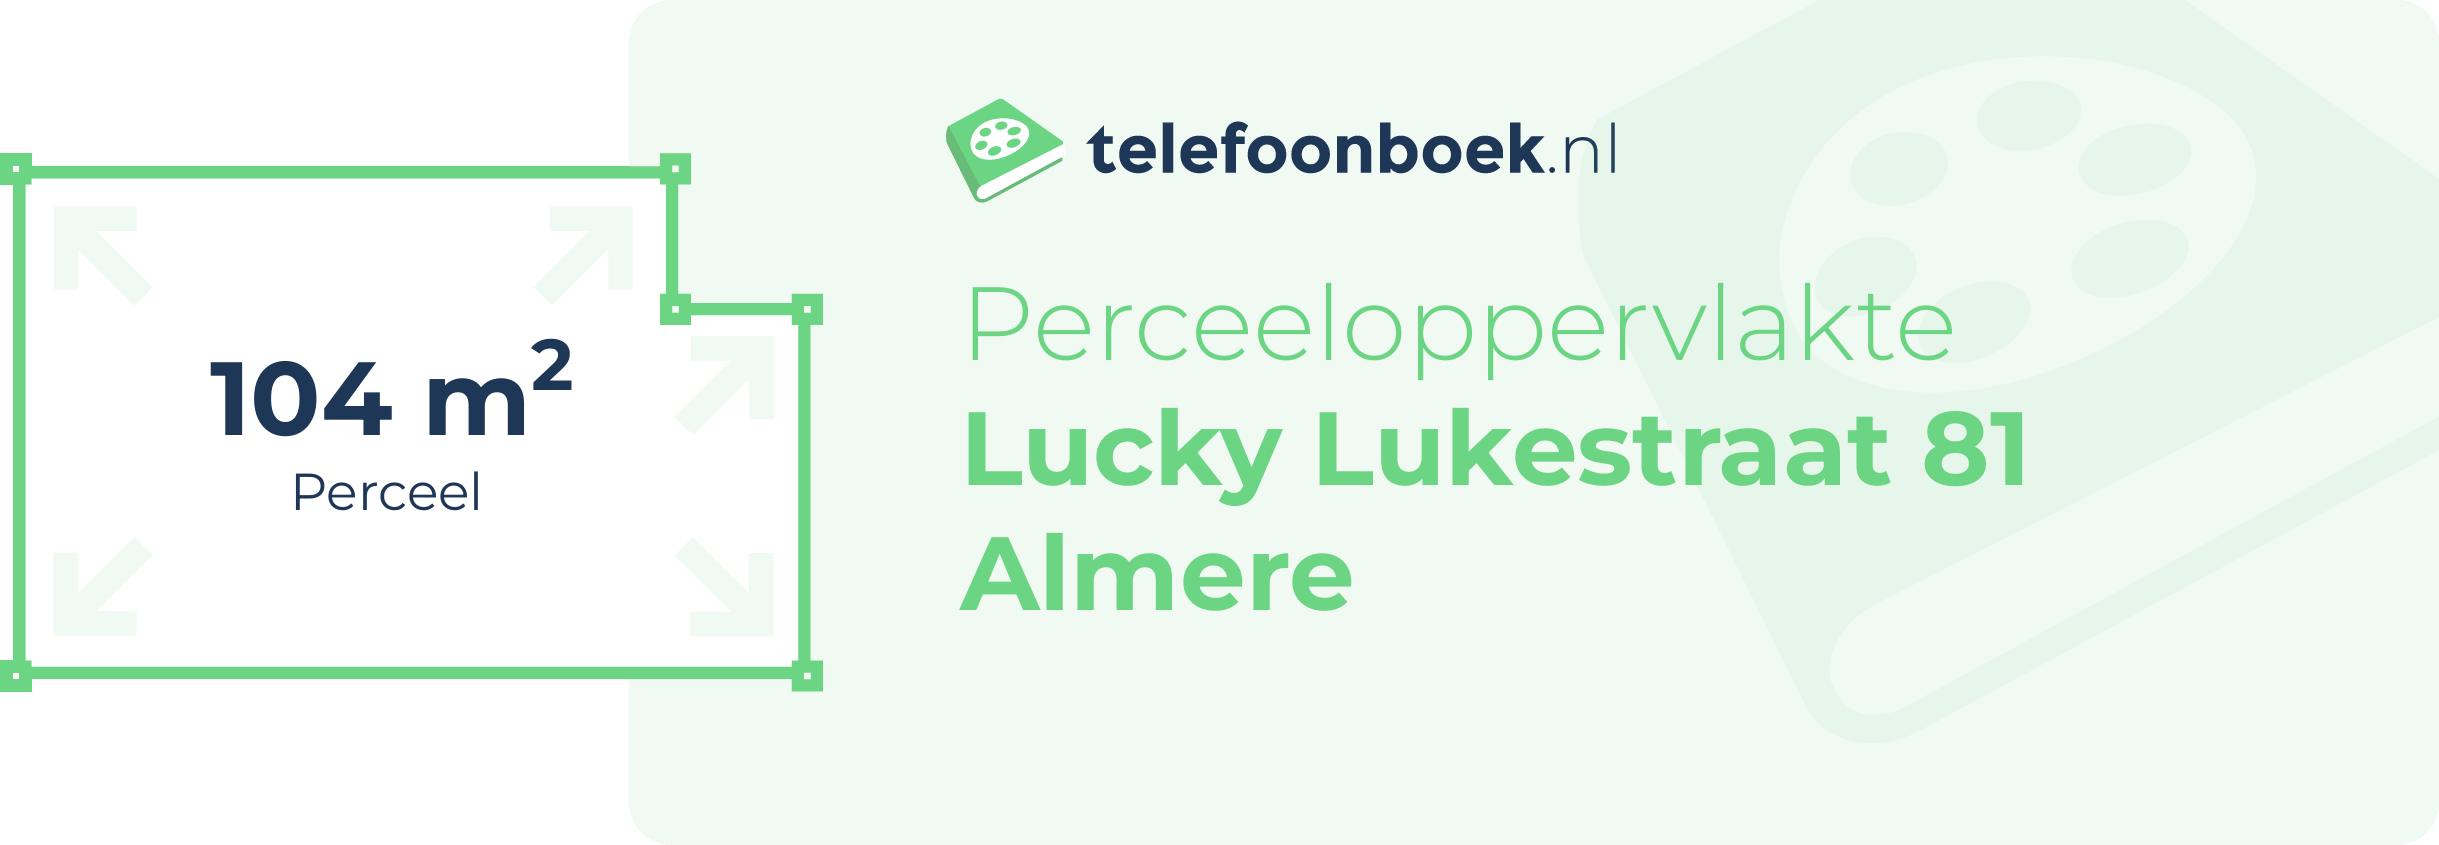 Perceeloppervlakte Lucky Lukestraat 81 Almere